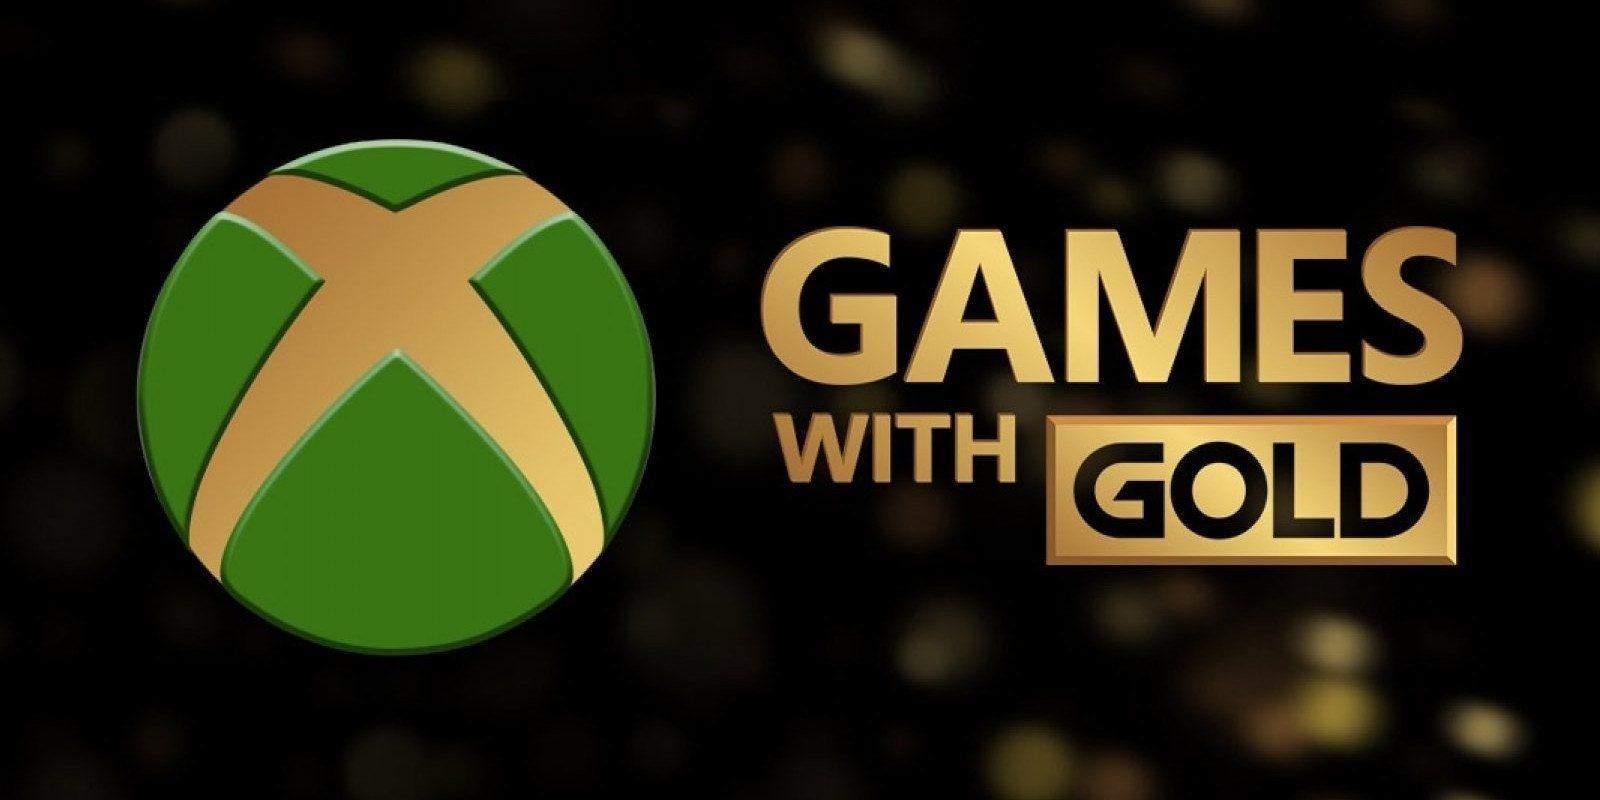 Desvelados los Games with Gold de este mes de octubre del 2019